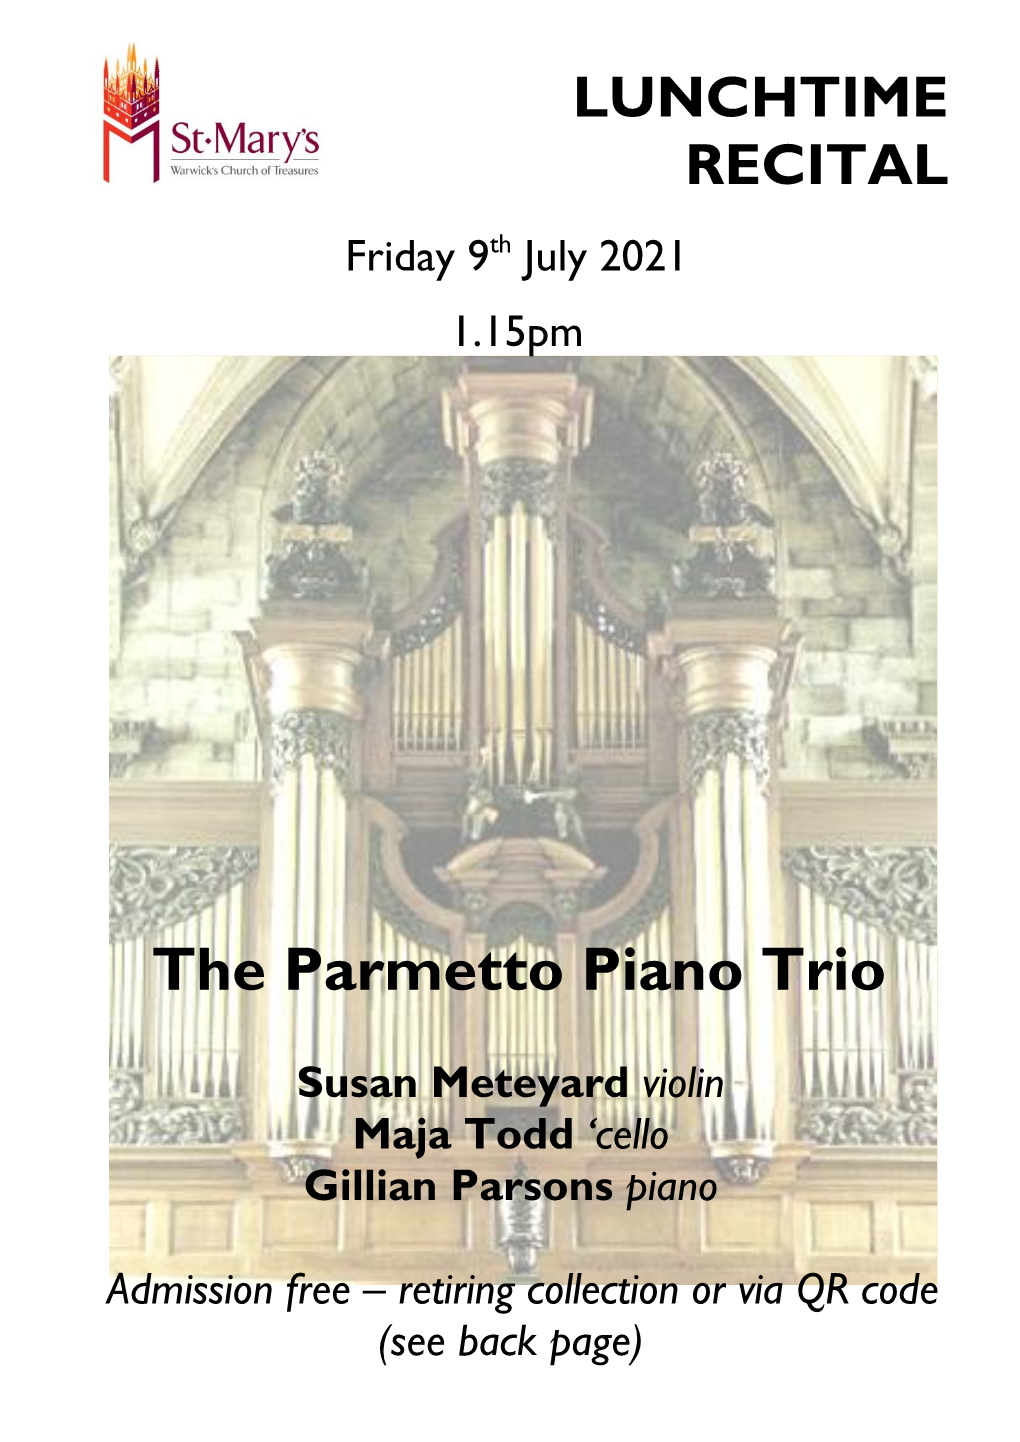 The Parmetto Piano Trio